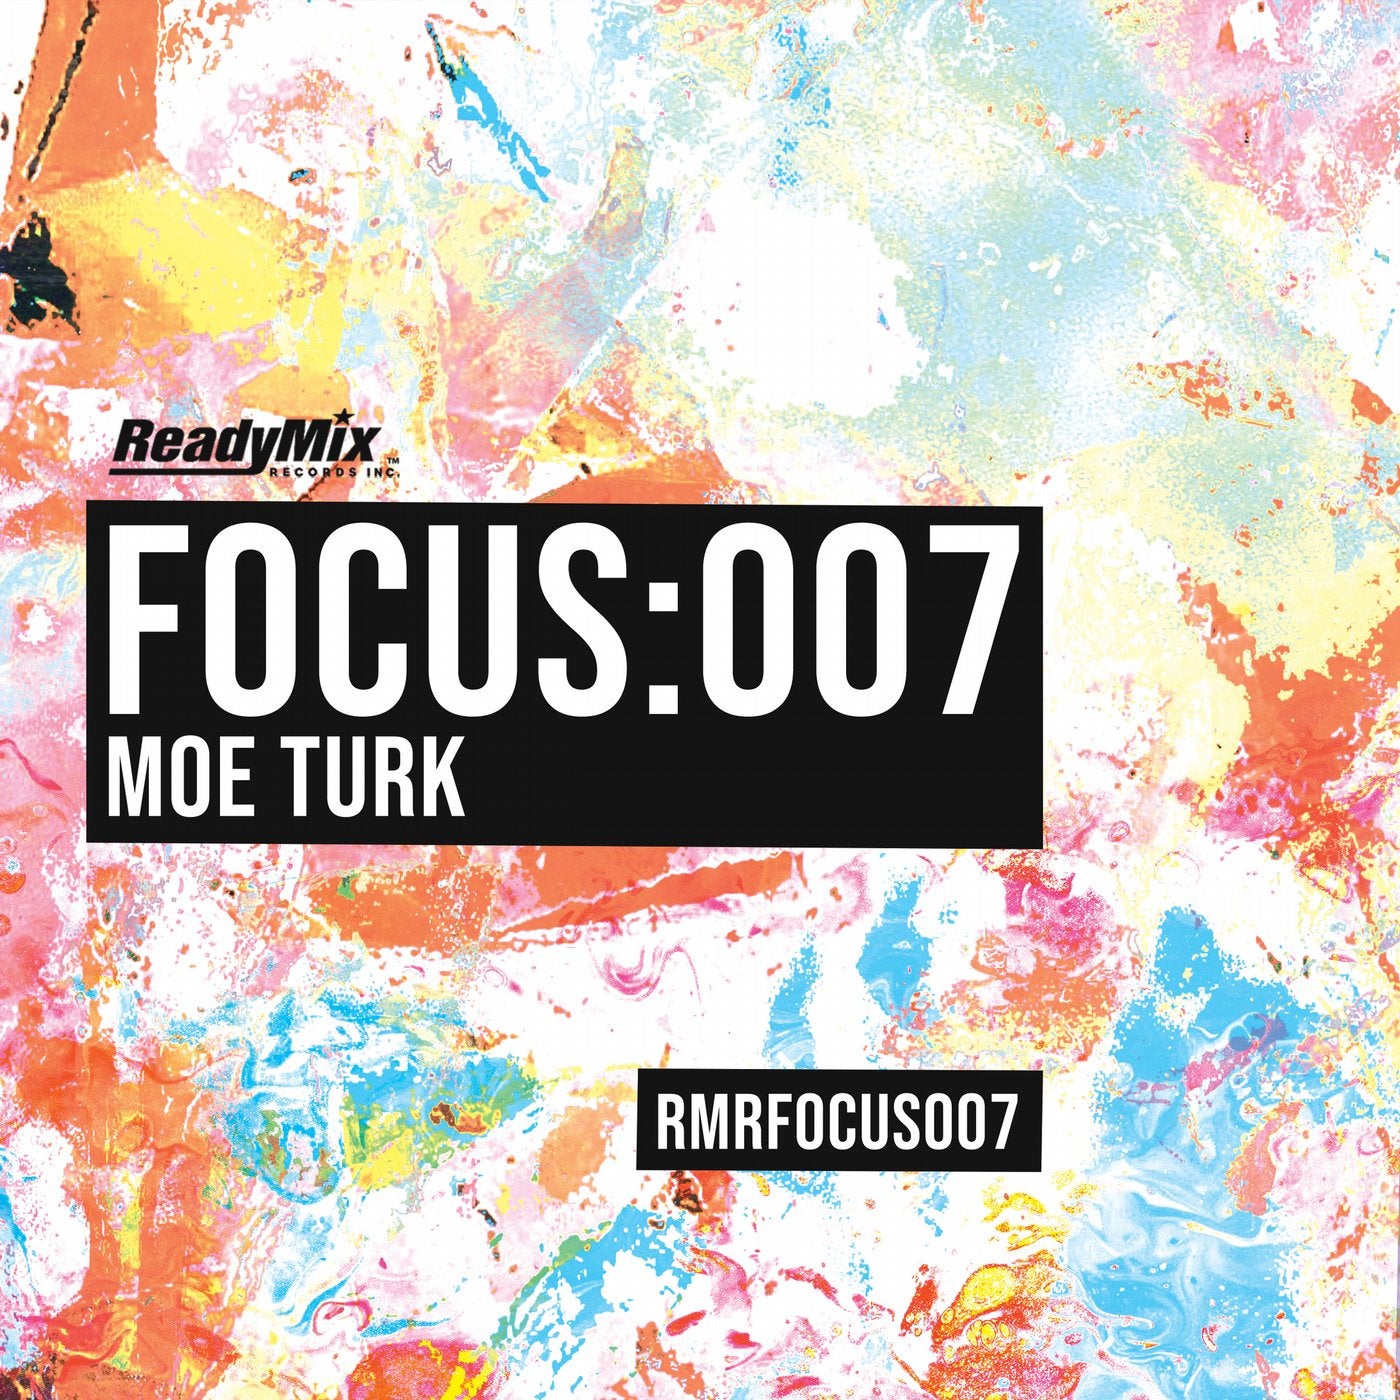 Focus:007 Moe Turk